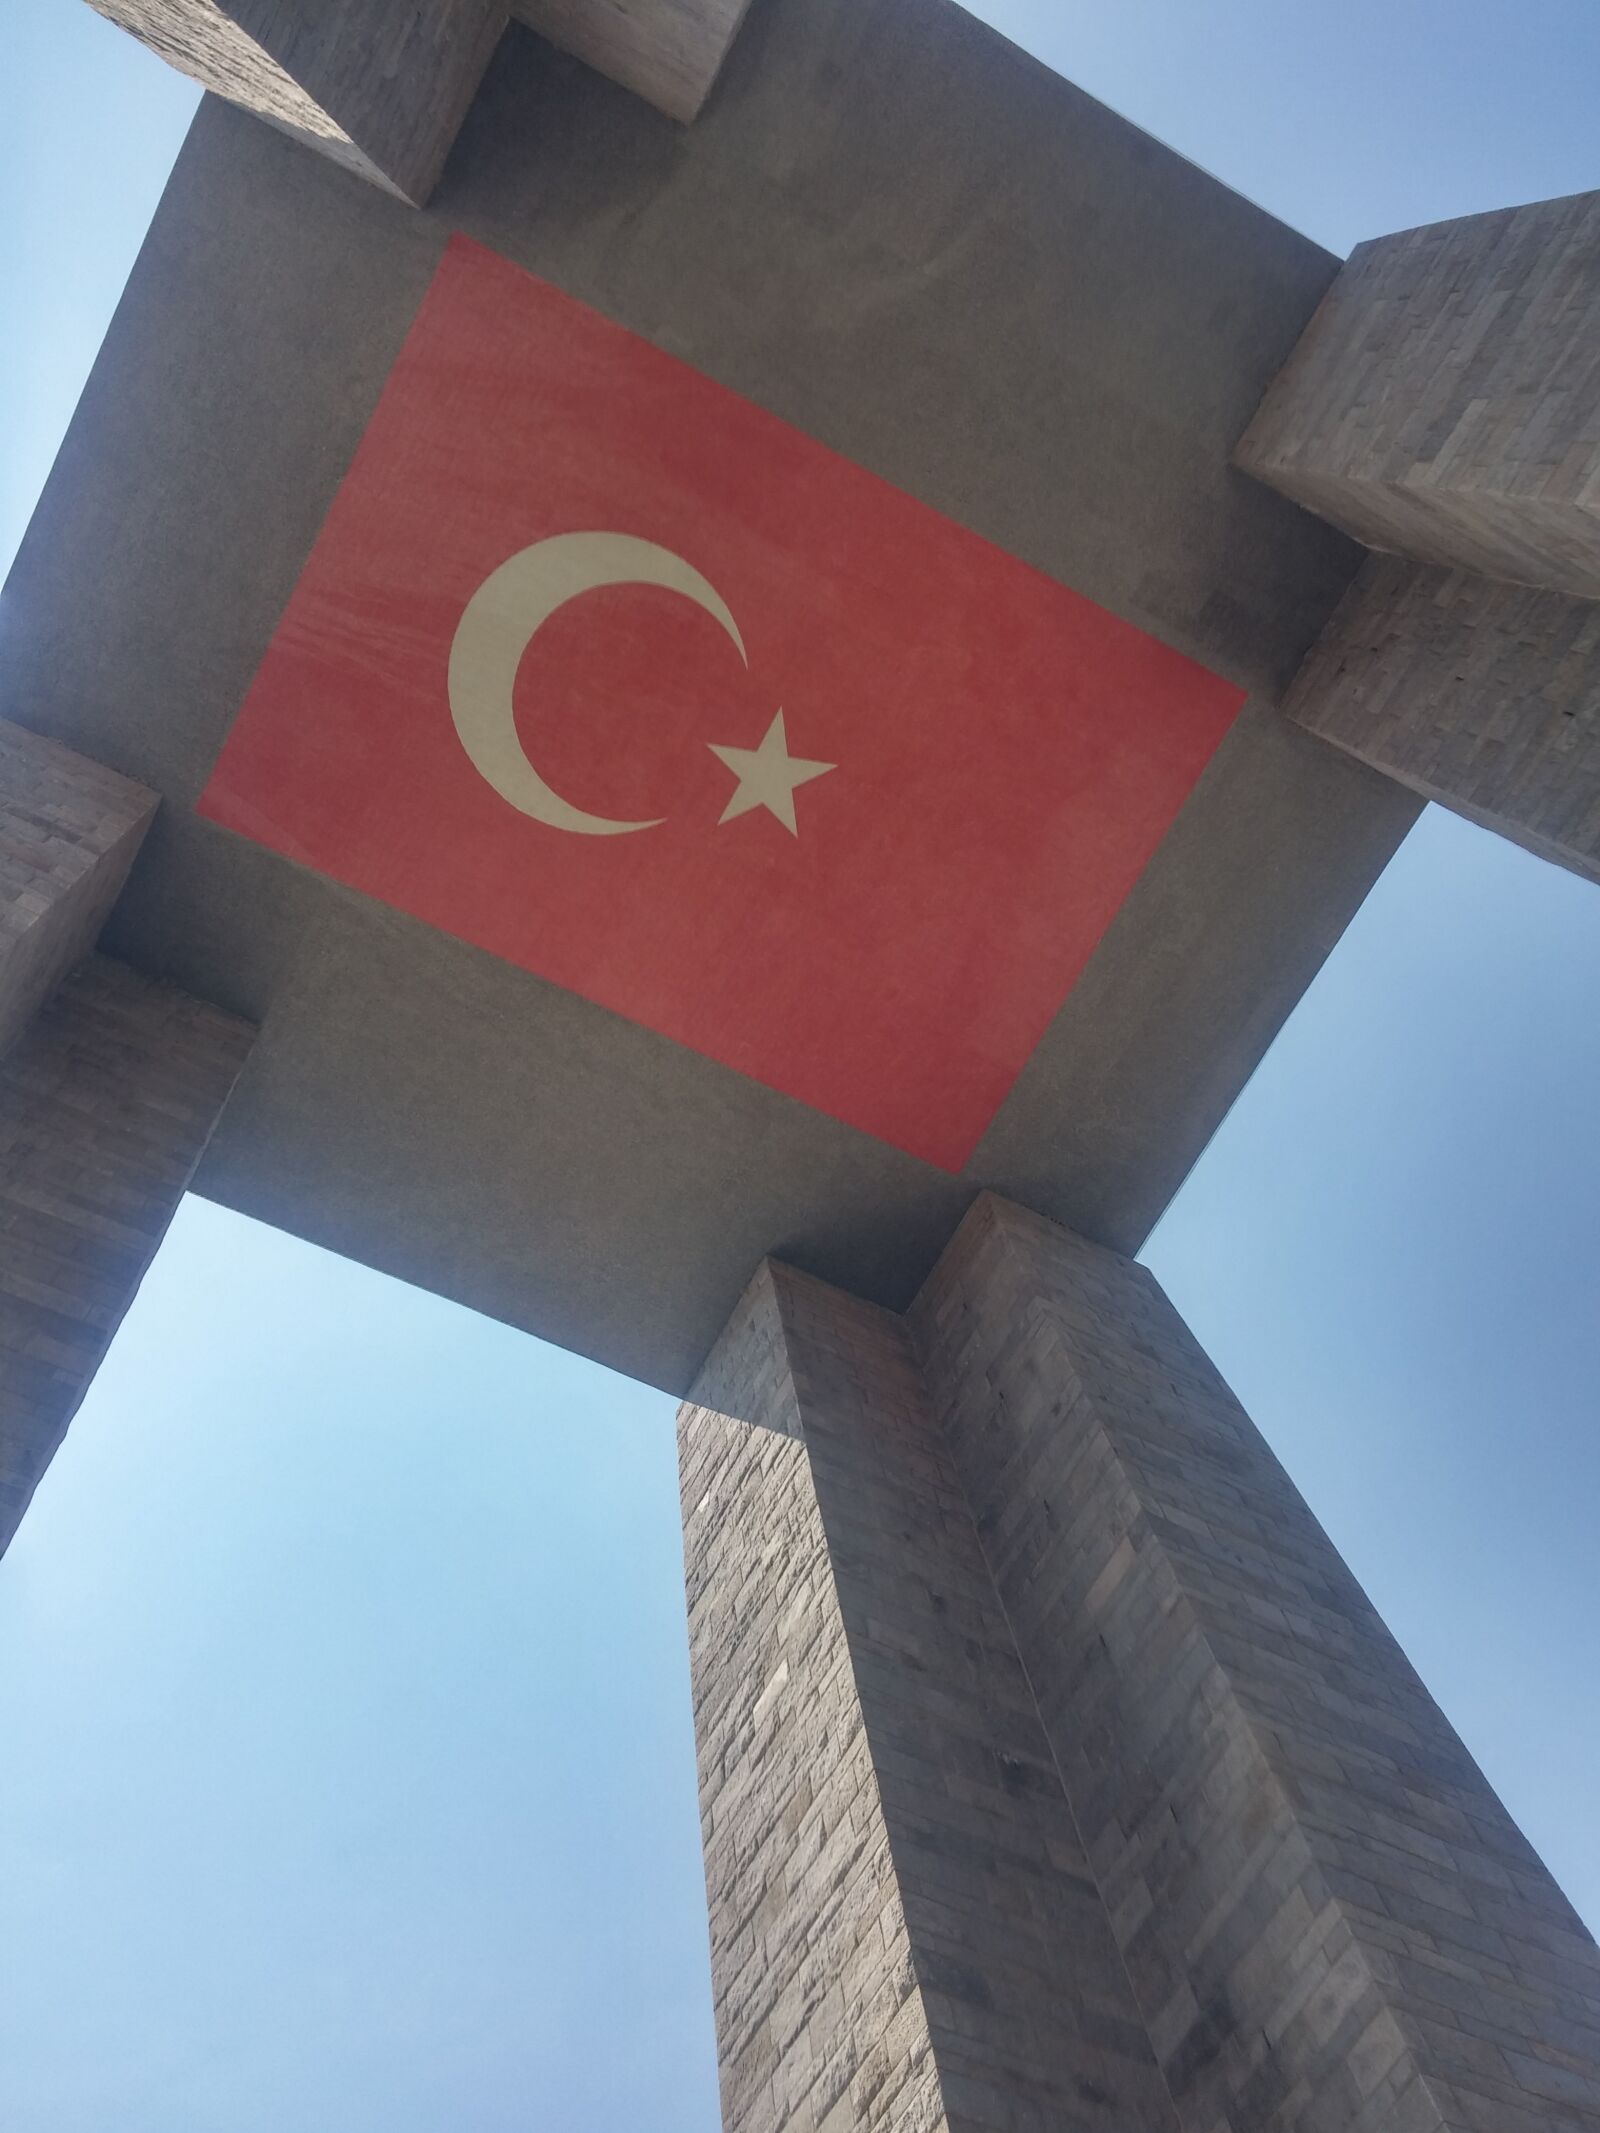 LG G3 sample photo. Turkey, flag, bayrak photography